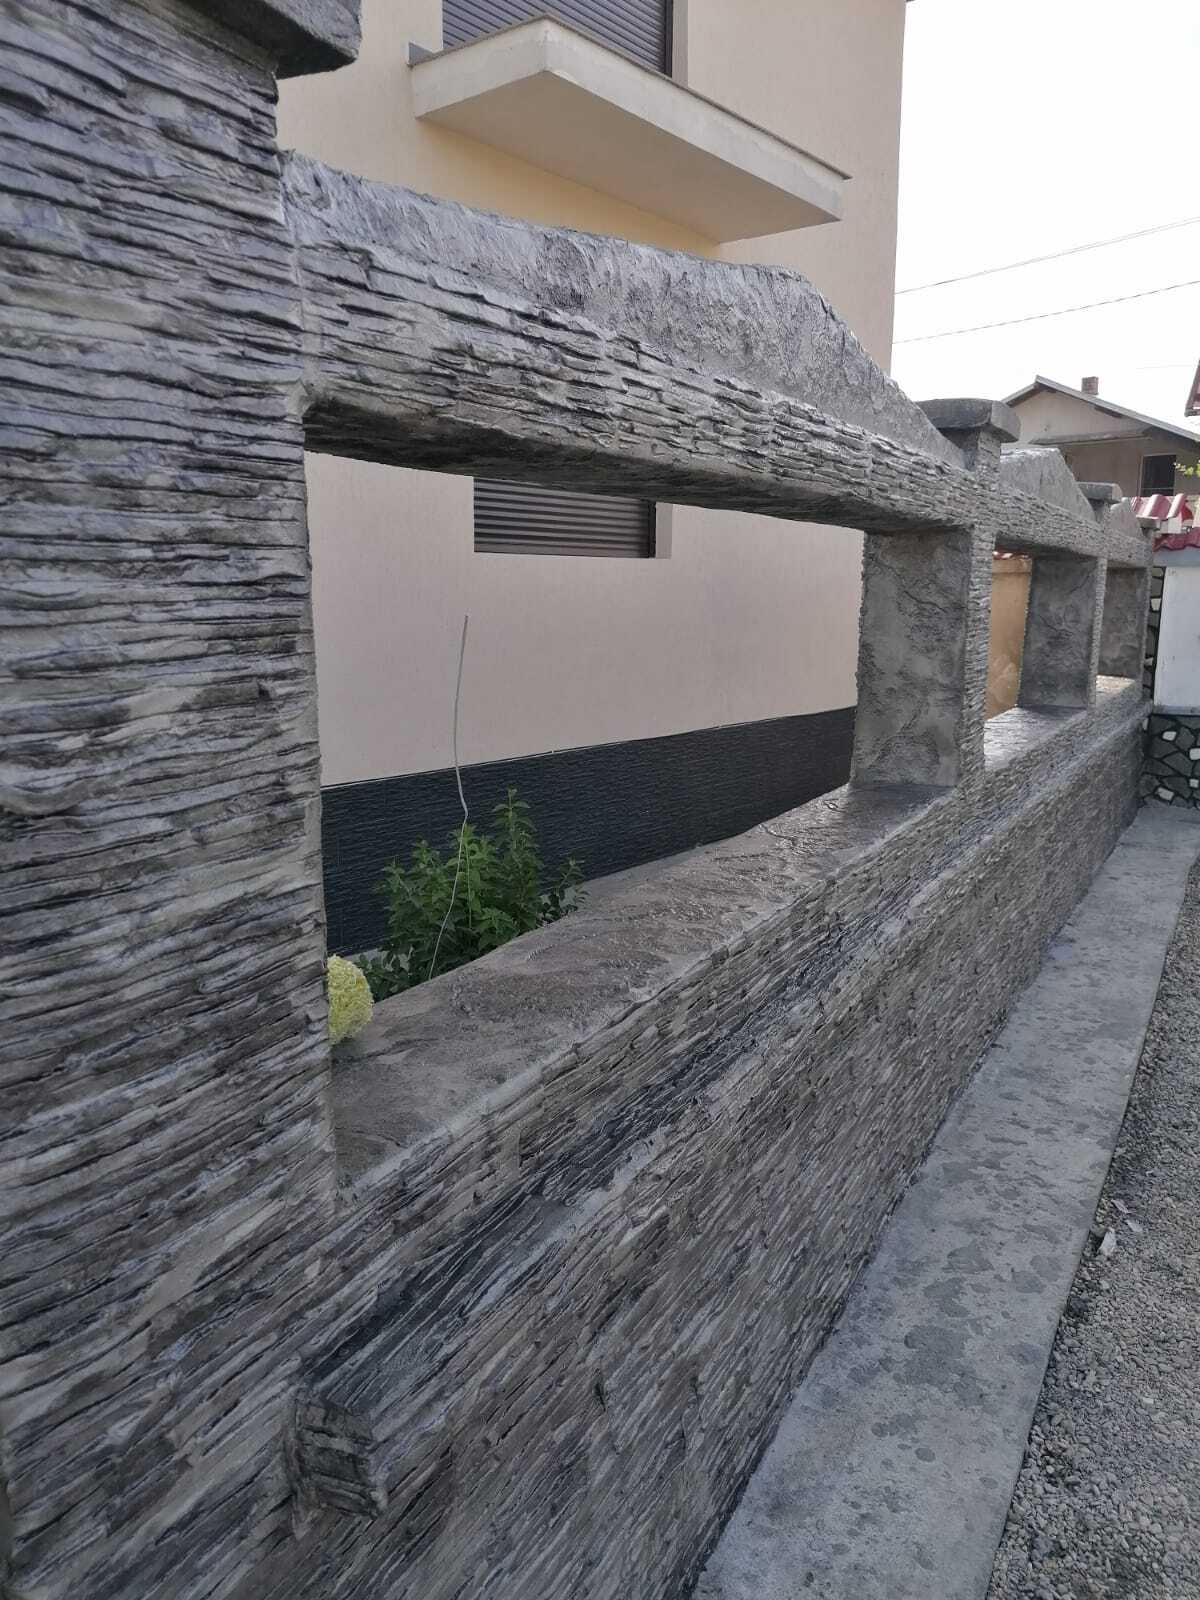 fasáda domu vertikálny tlačený betón imitácia kameňa